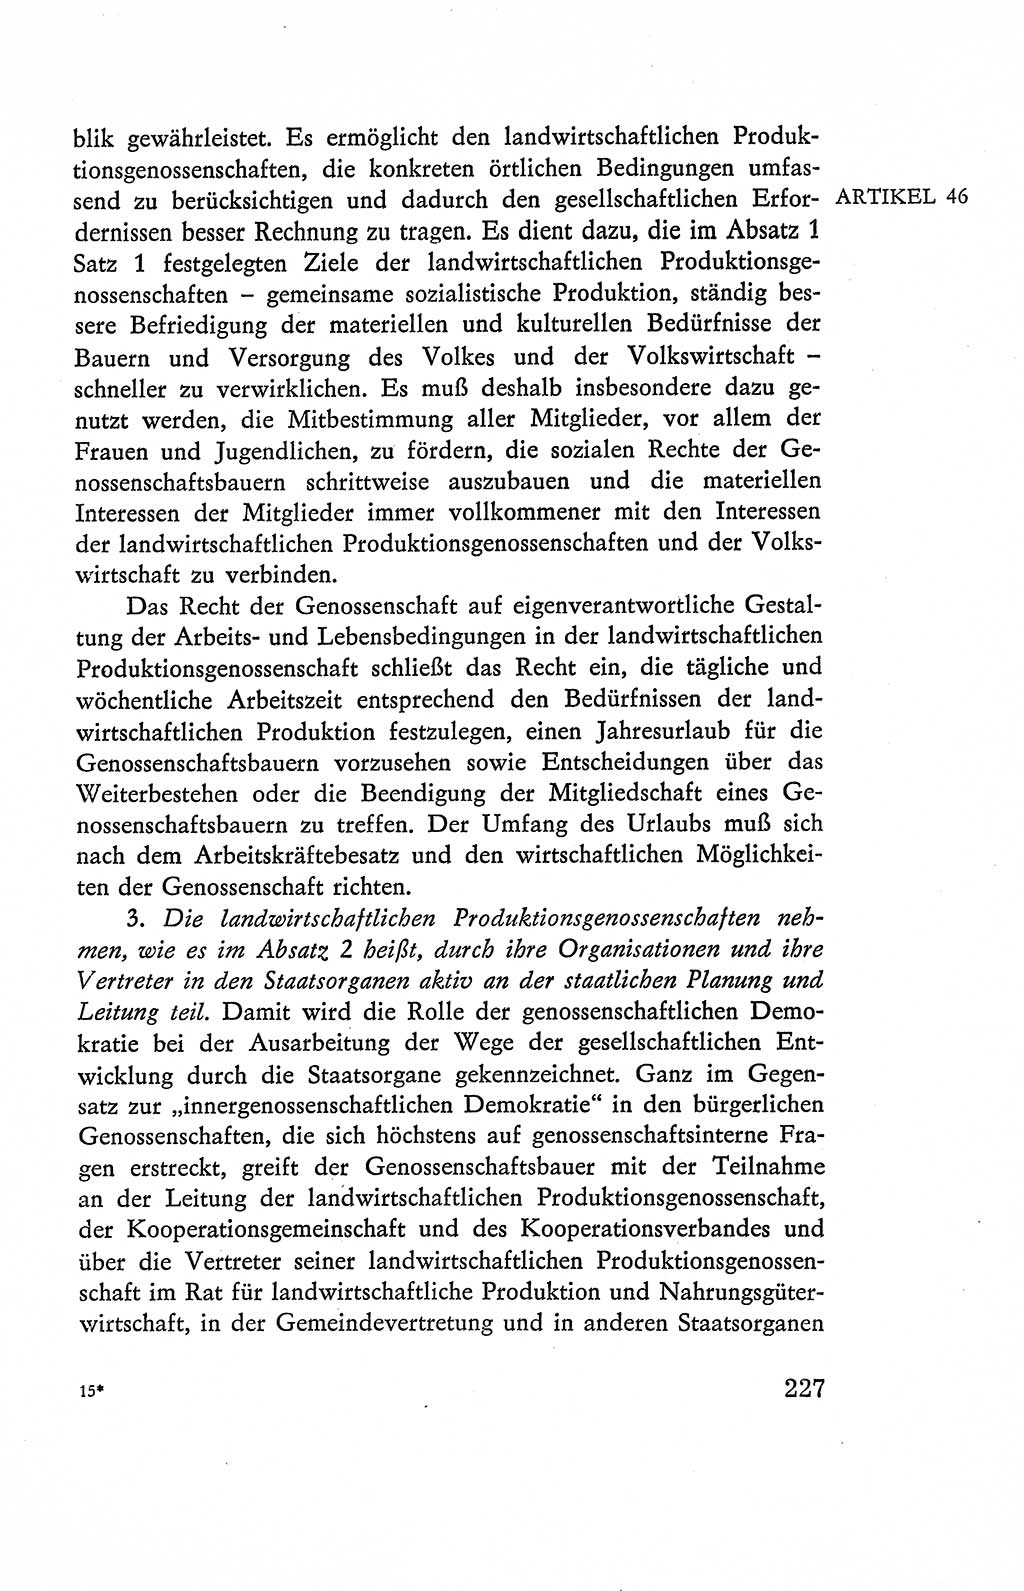 Verfassung der Deutschen Demokratischen Republik (DDR), Dokumente, Kommentar 1969, Band 2, Seite 227 (Verf. DDR Dok. Komm. 1969, Bd. 2, S. 227)